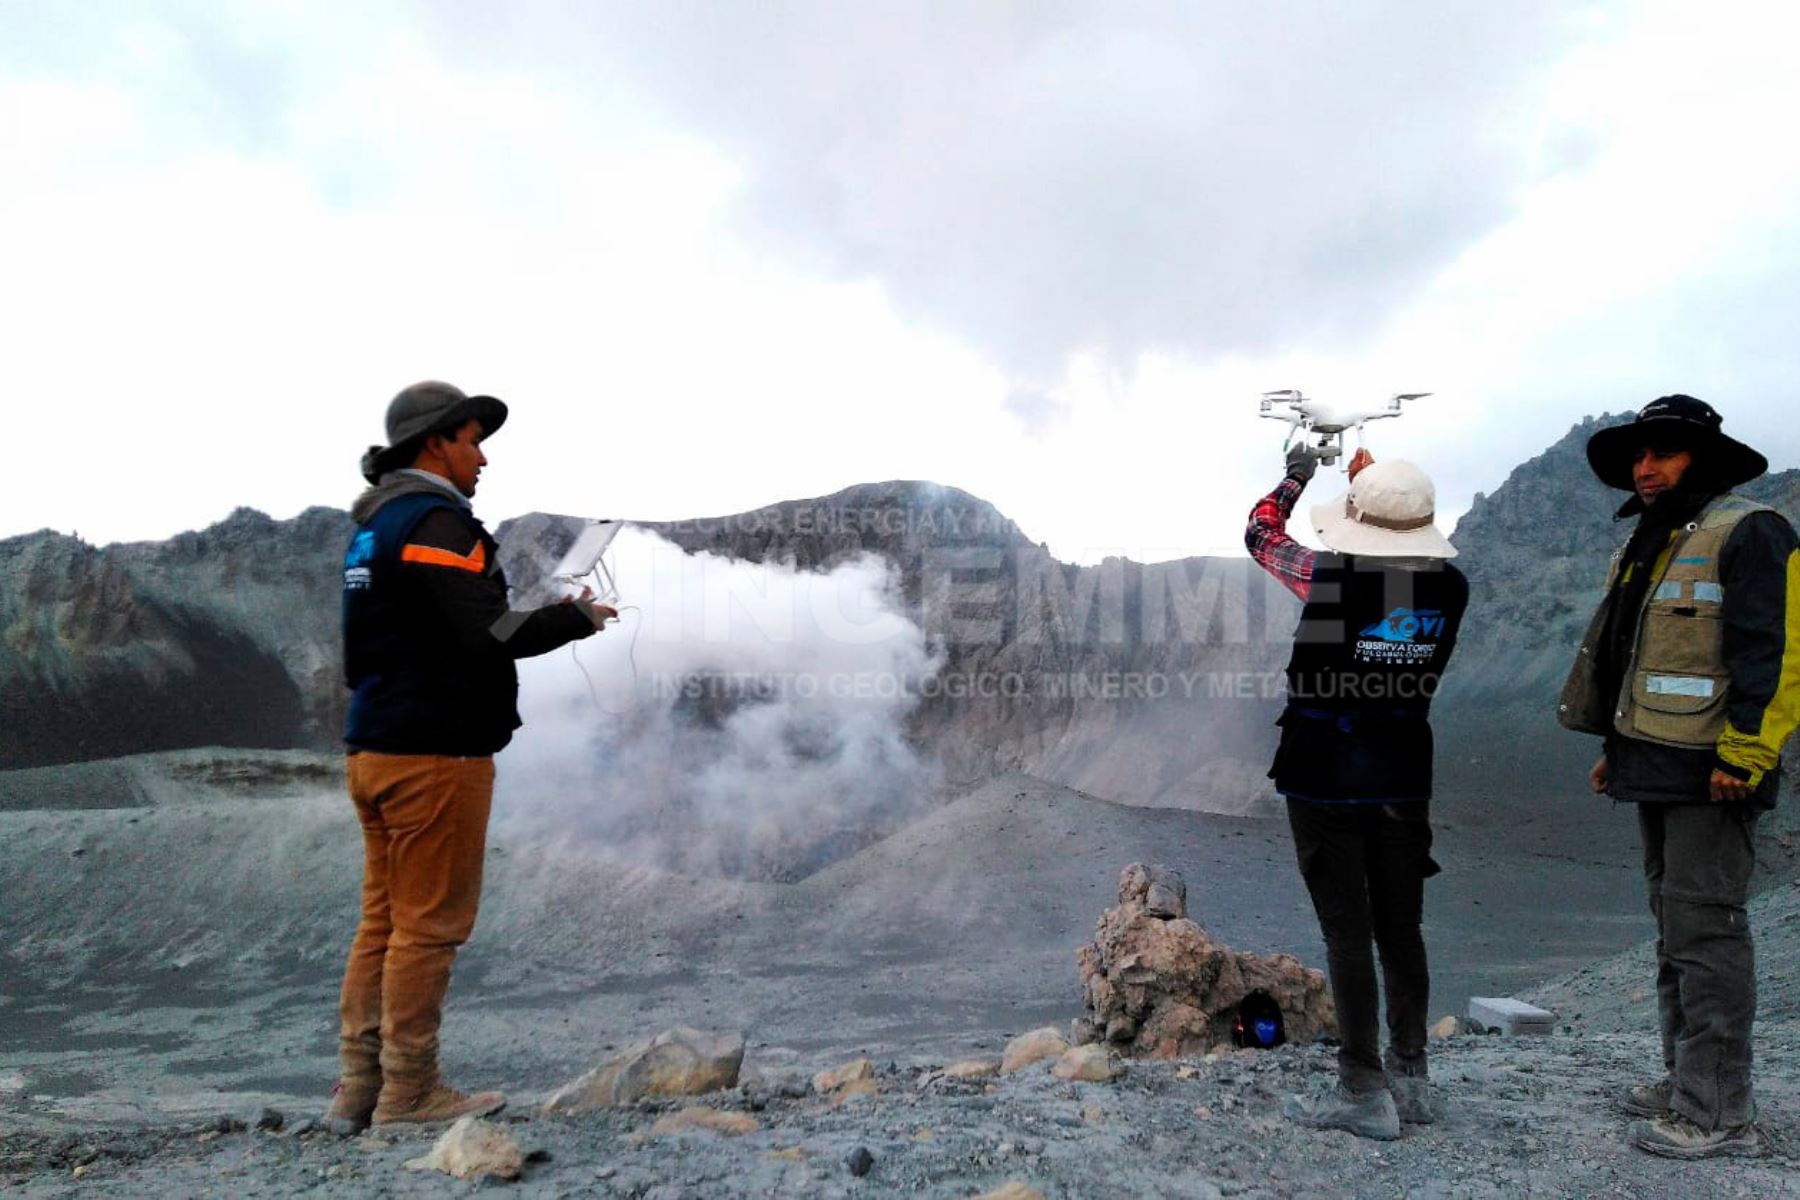 Una brigada del Ingemmet, integrada por tres geólogos, recolectan muestras del material expulsado durante las tres explosiones del volcán Ubinas (Moquegua) registradas hoy. Foto: Ingemmet